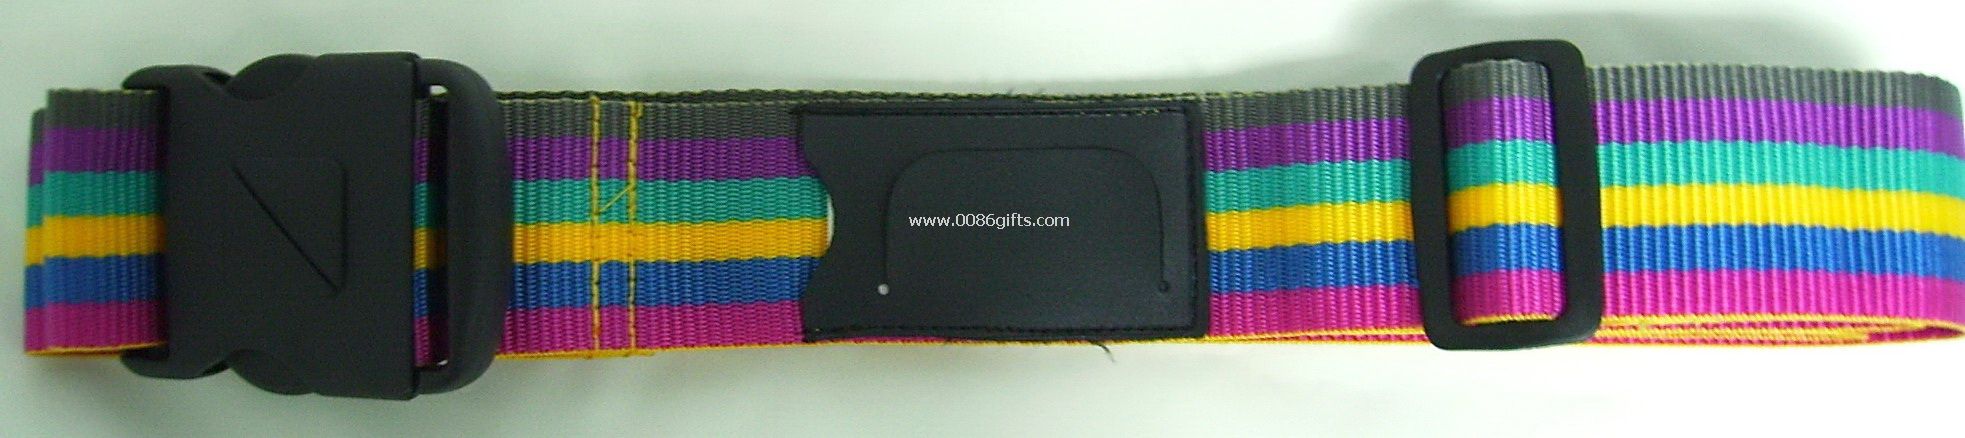 Colorful luggage belt